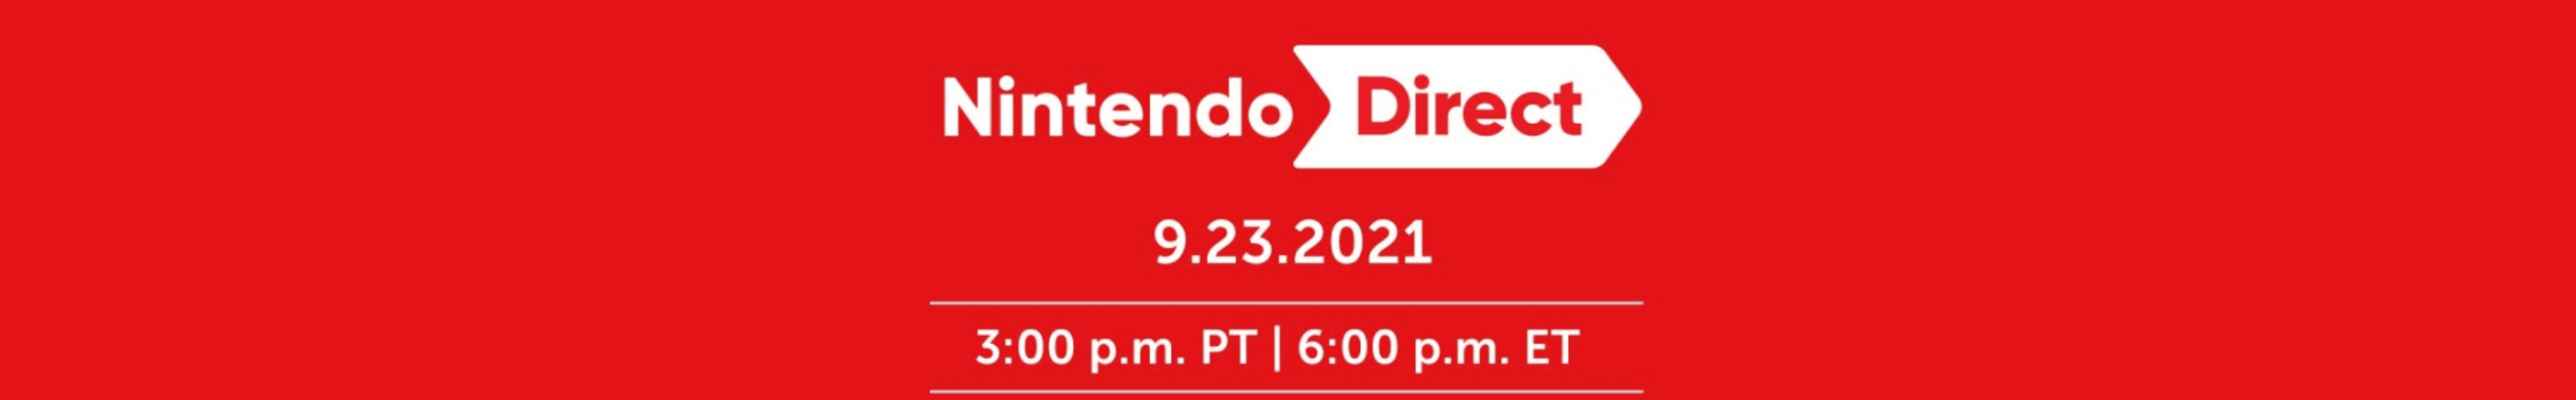 September 2021 Nintendo Direct Announced